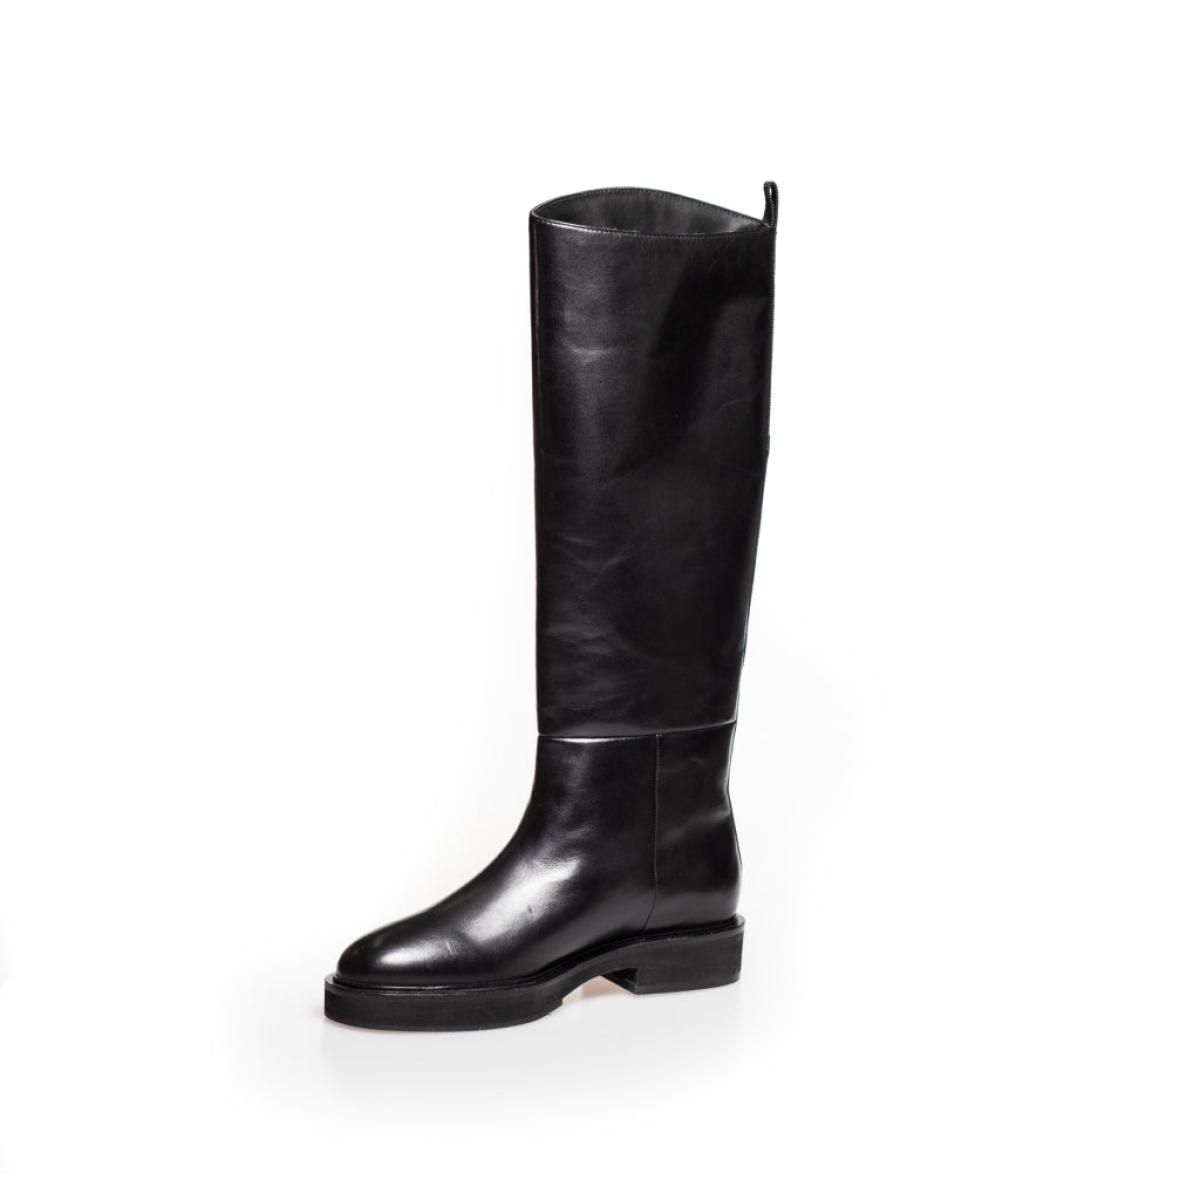 Women Copenhagen Shoes Future Run - Black Long Boots Discount - 2